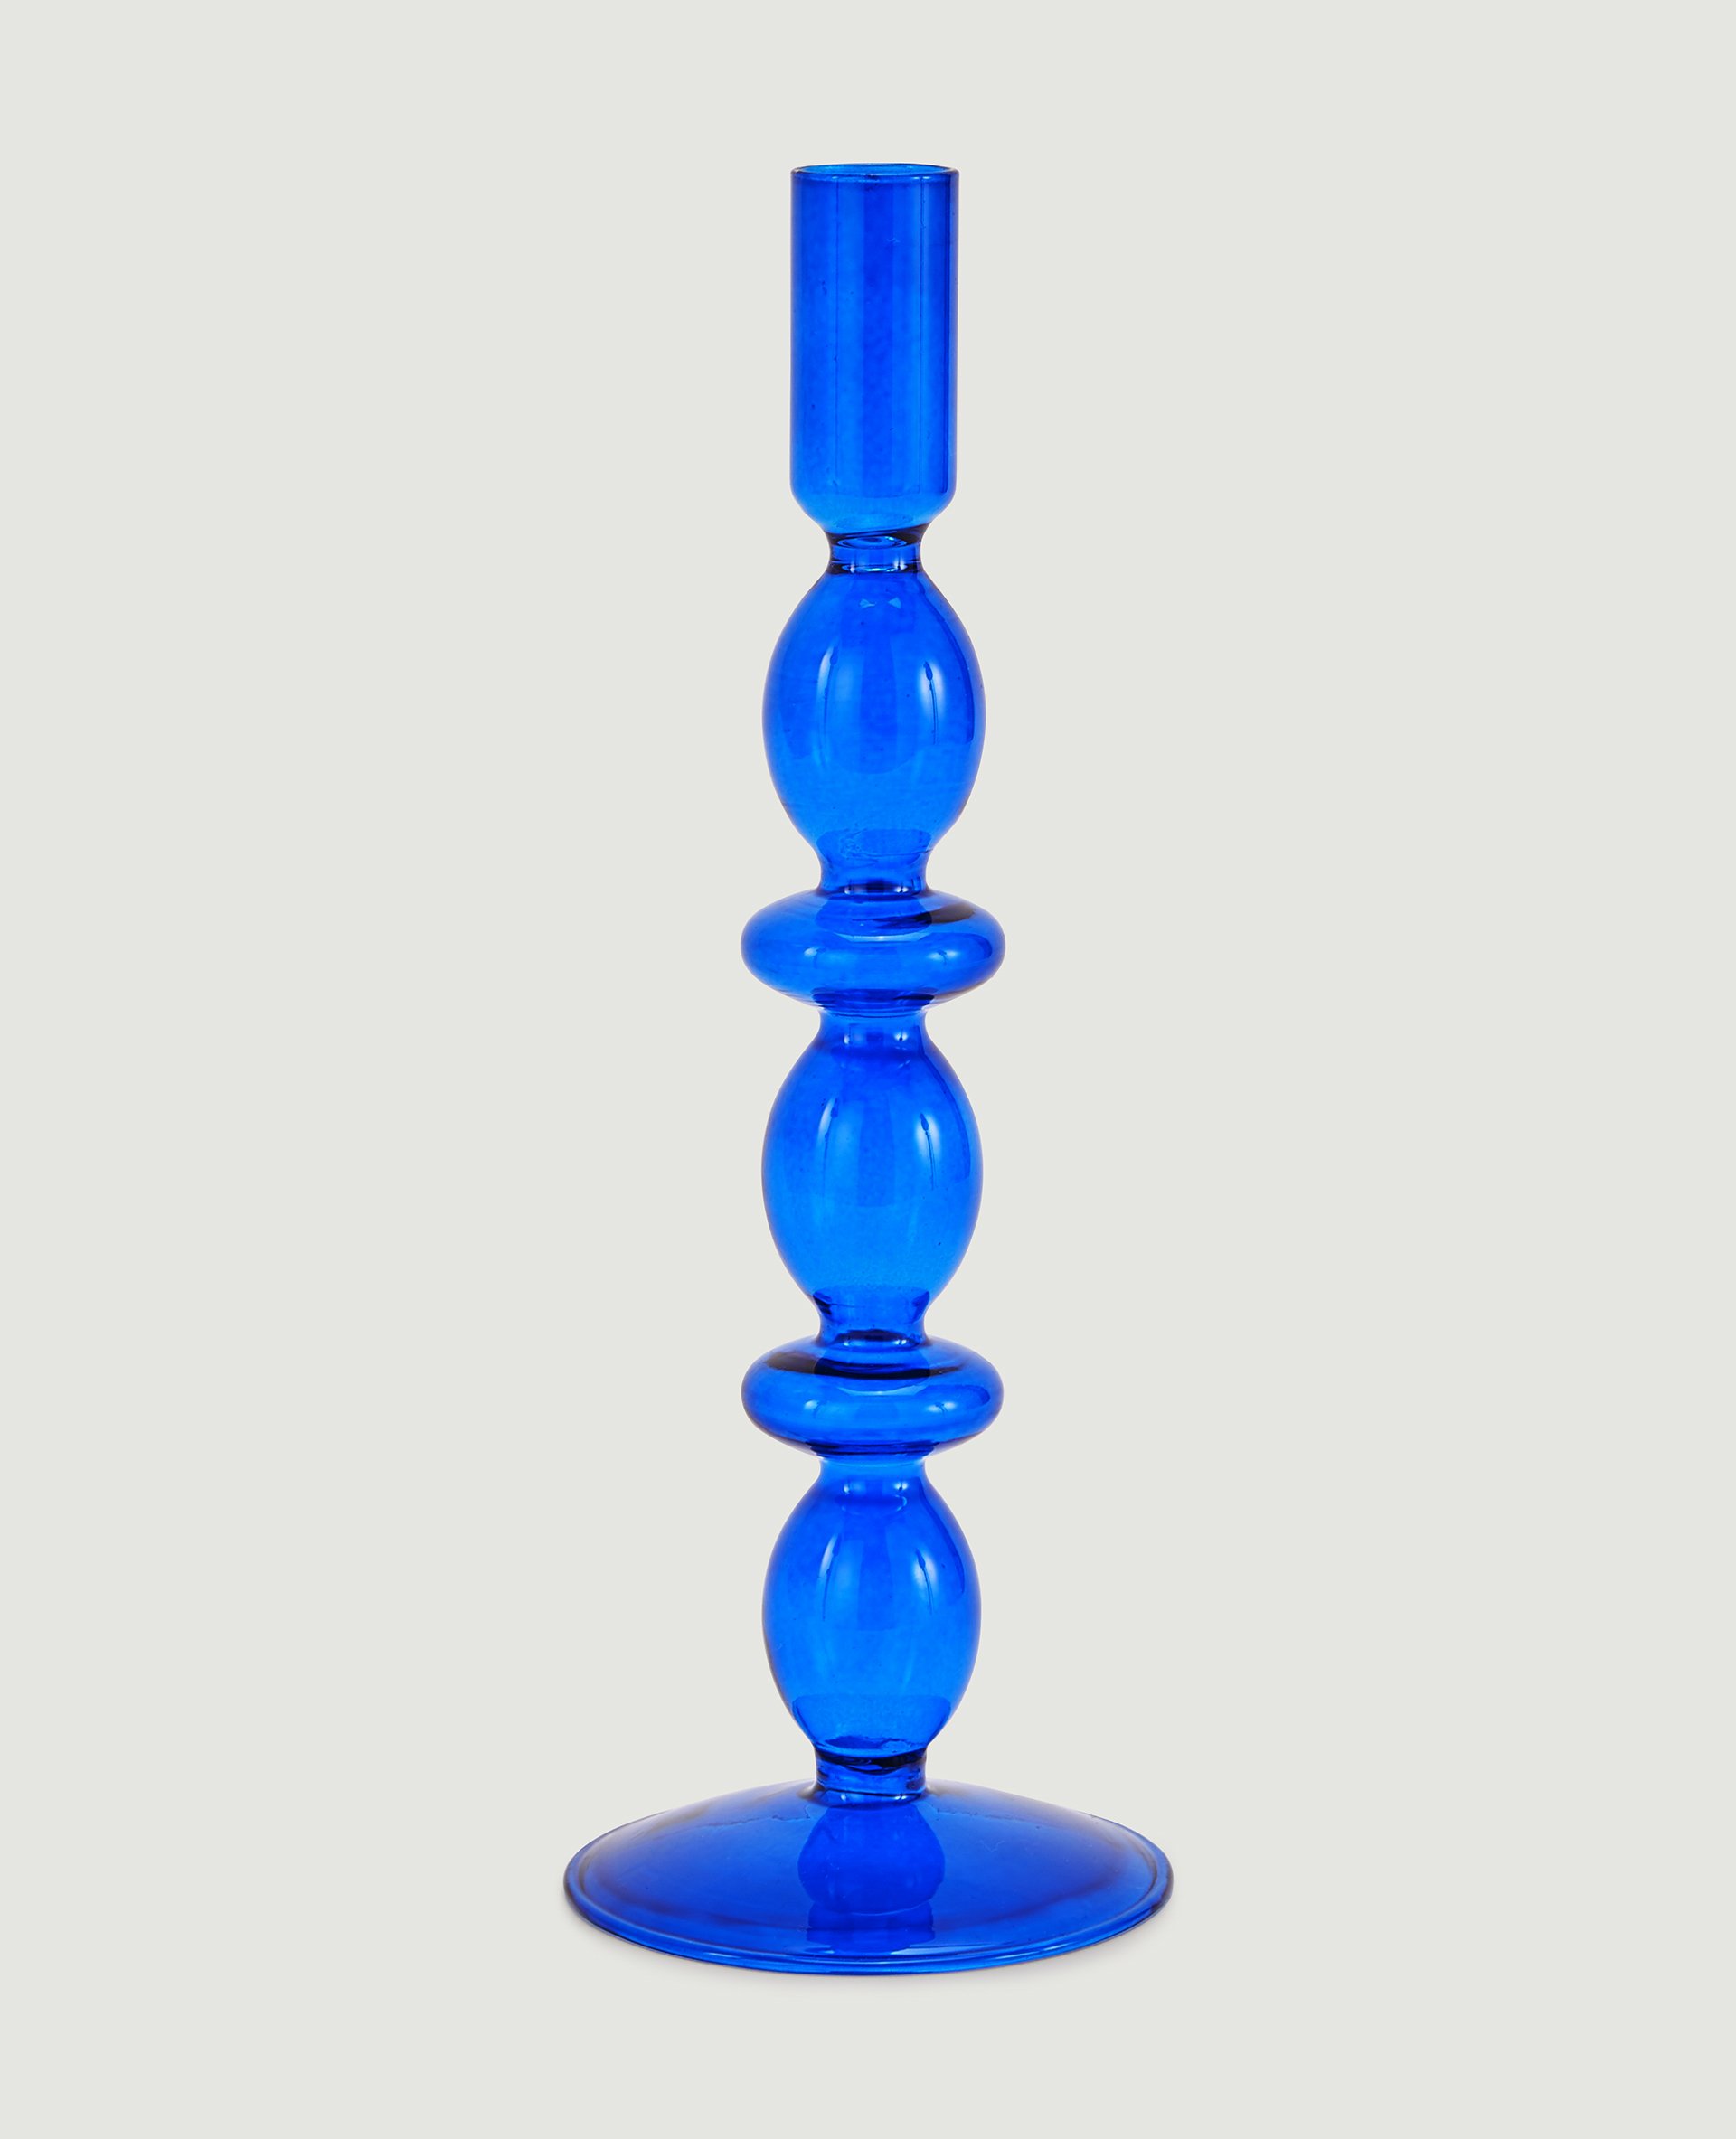 Chandelier en verre bleu - Pimkie